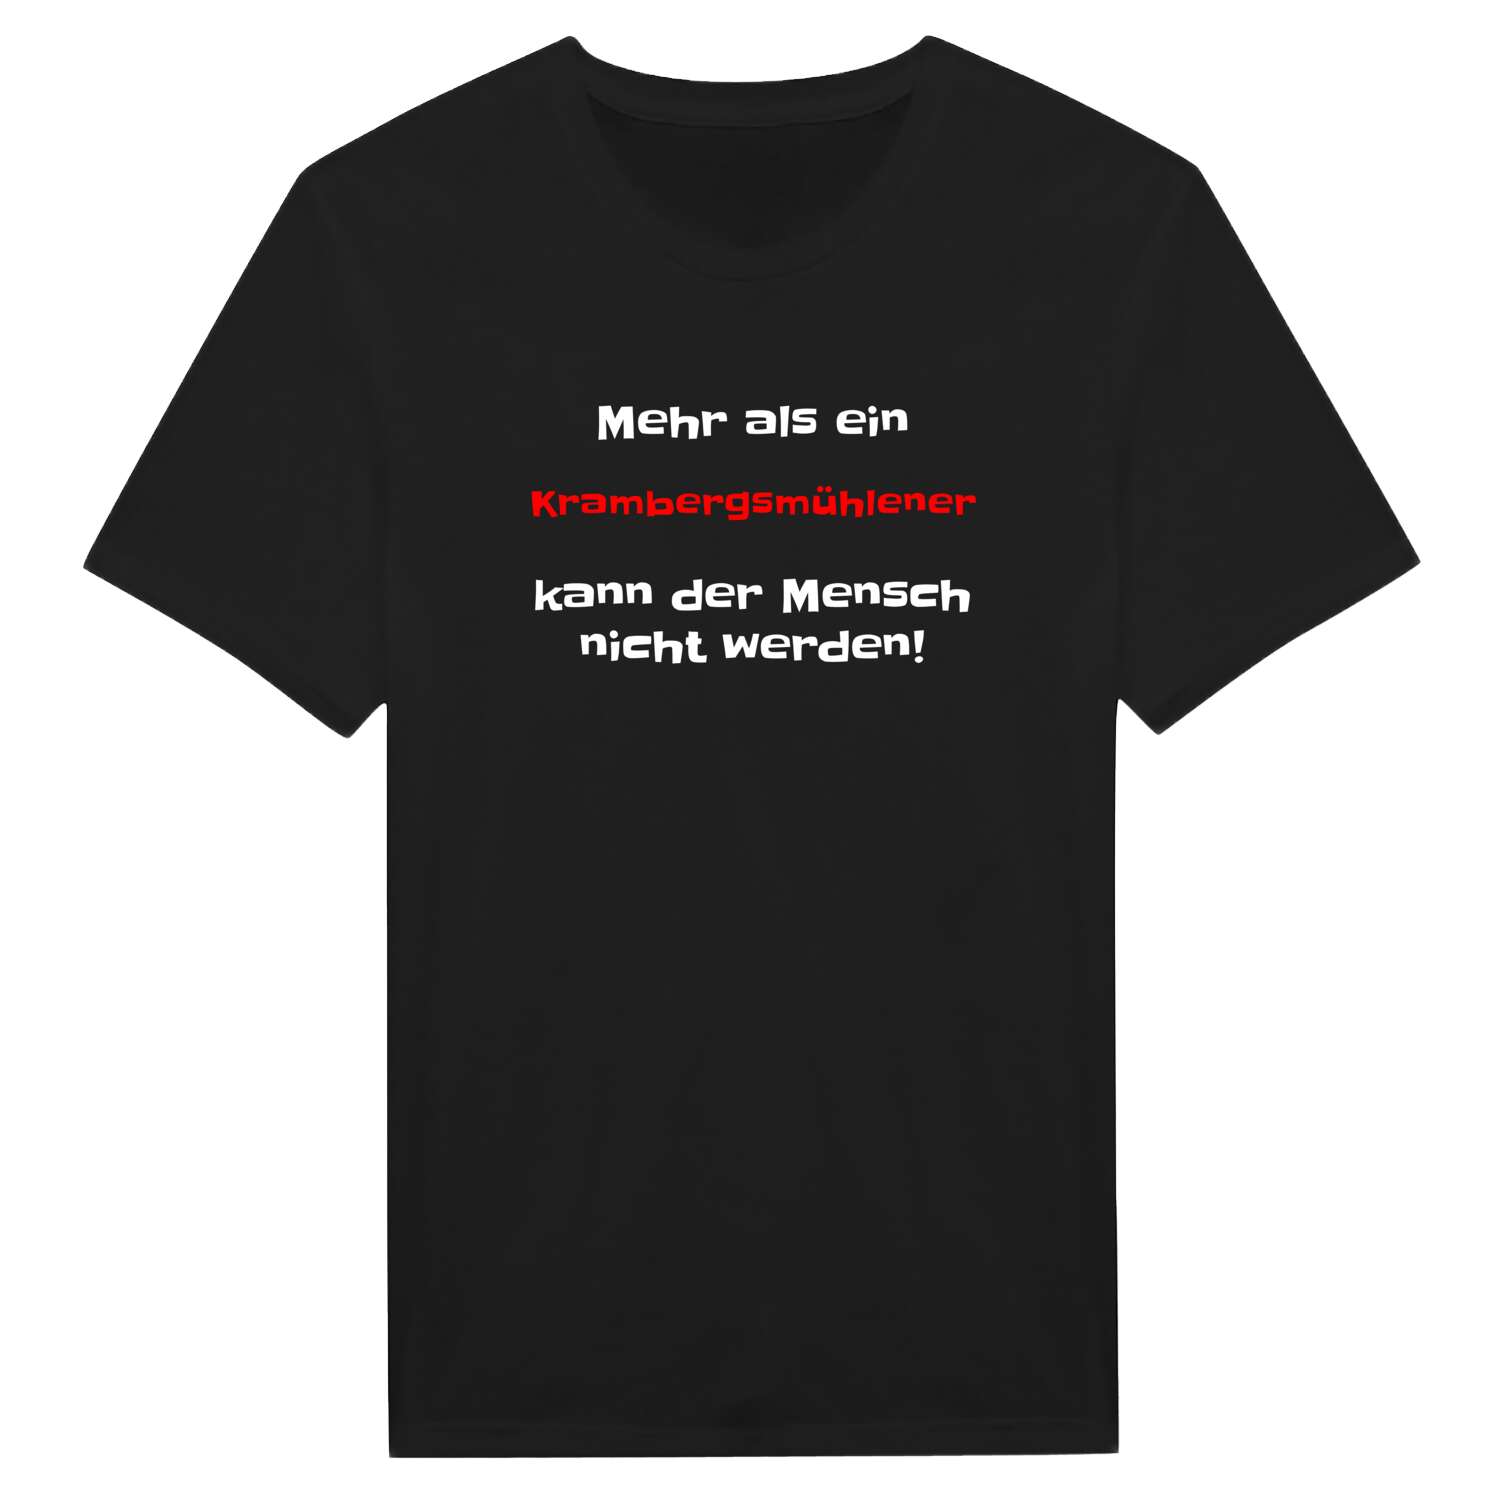 Krambergsmühle T-Shirt »Mehr als ein«